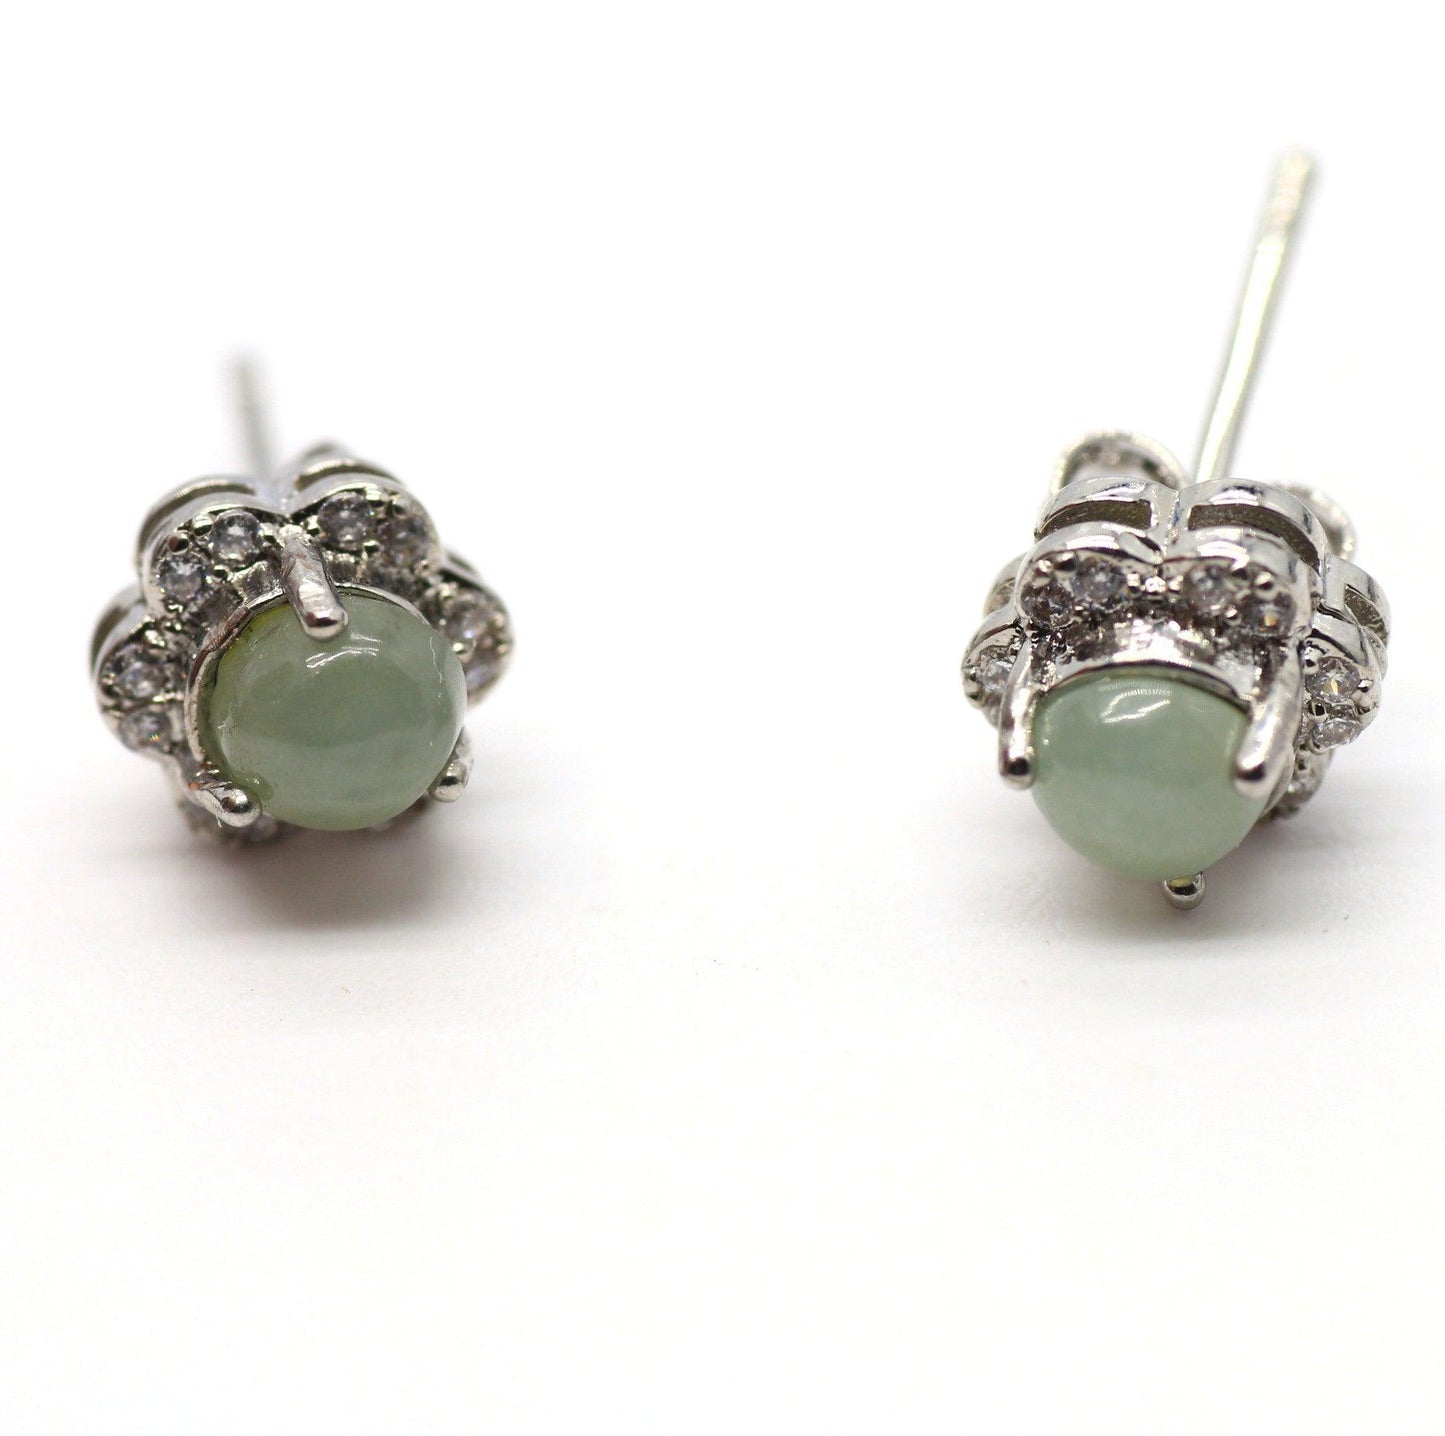 Type A Jadeite Jade Earrings s925 Silver Inlay HG-D7YP-U5BK